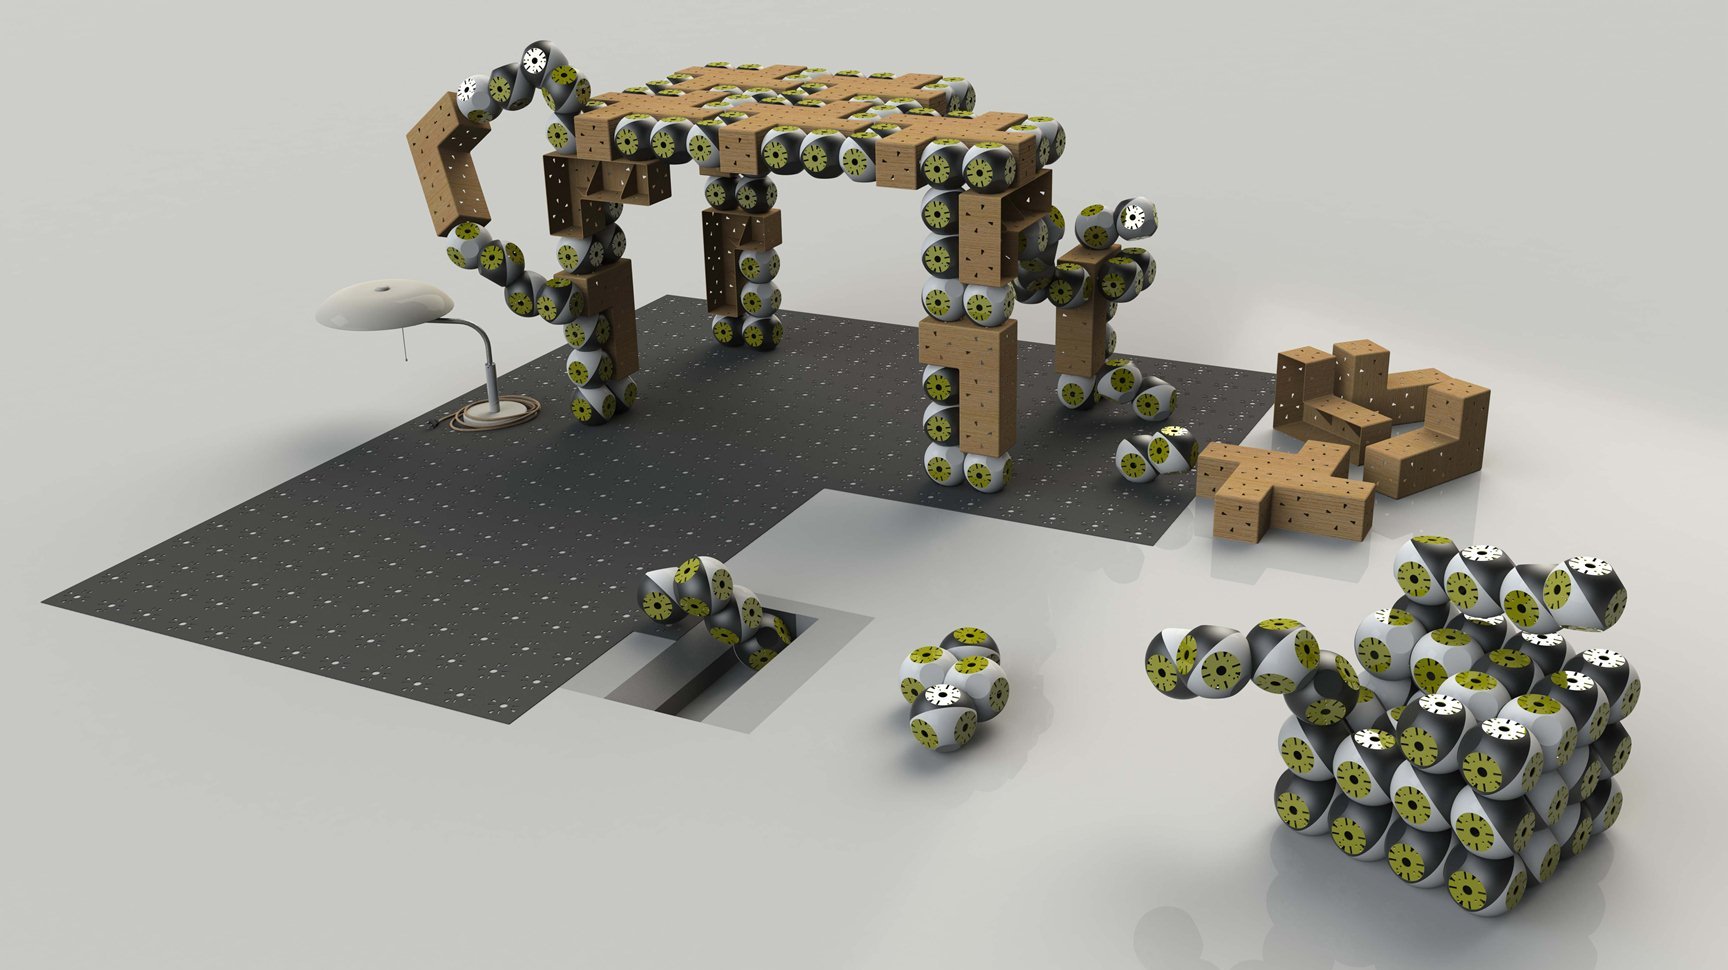 Möbel aus modularen Robotern